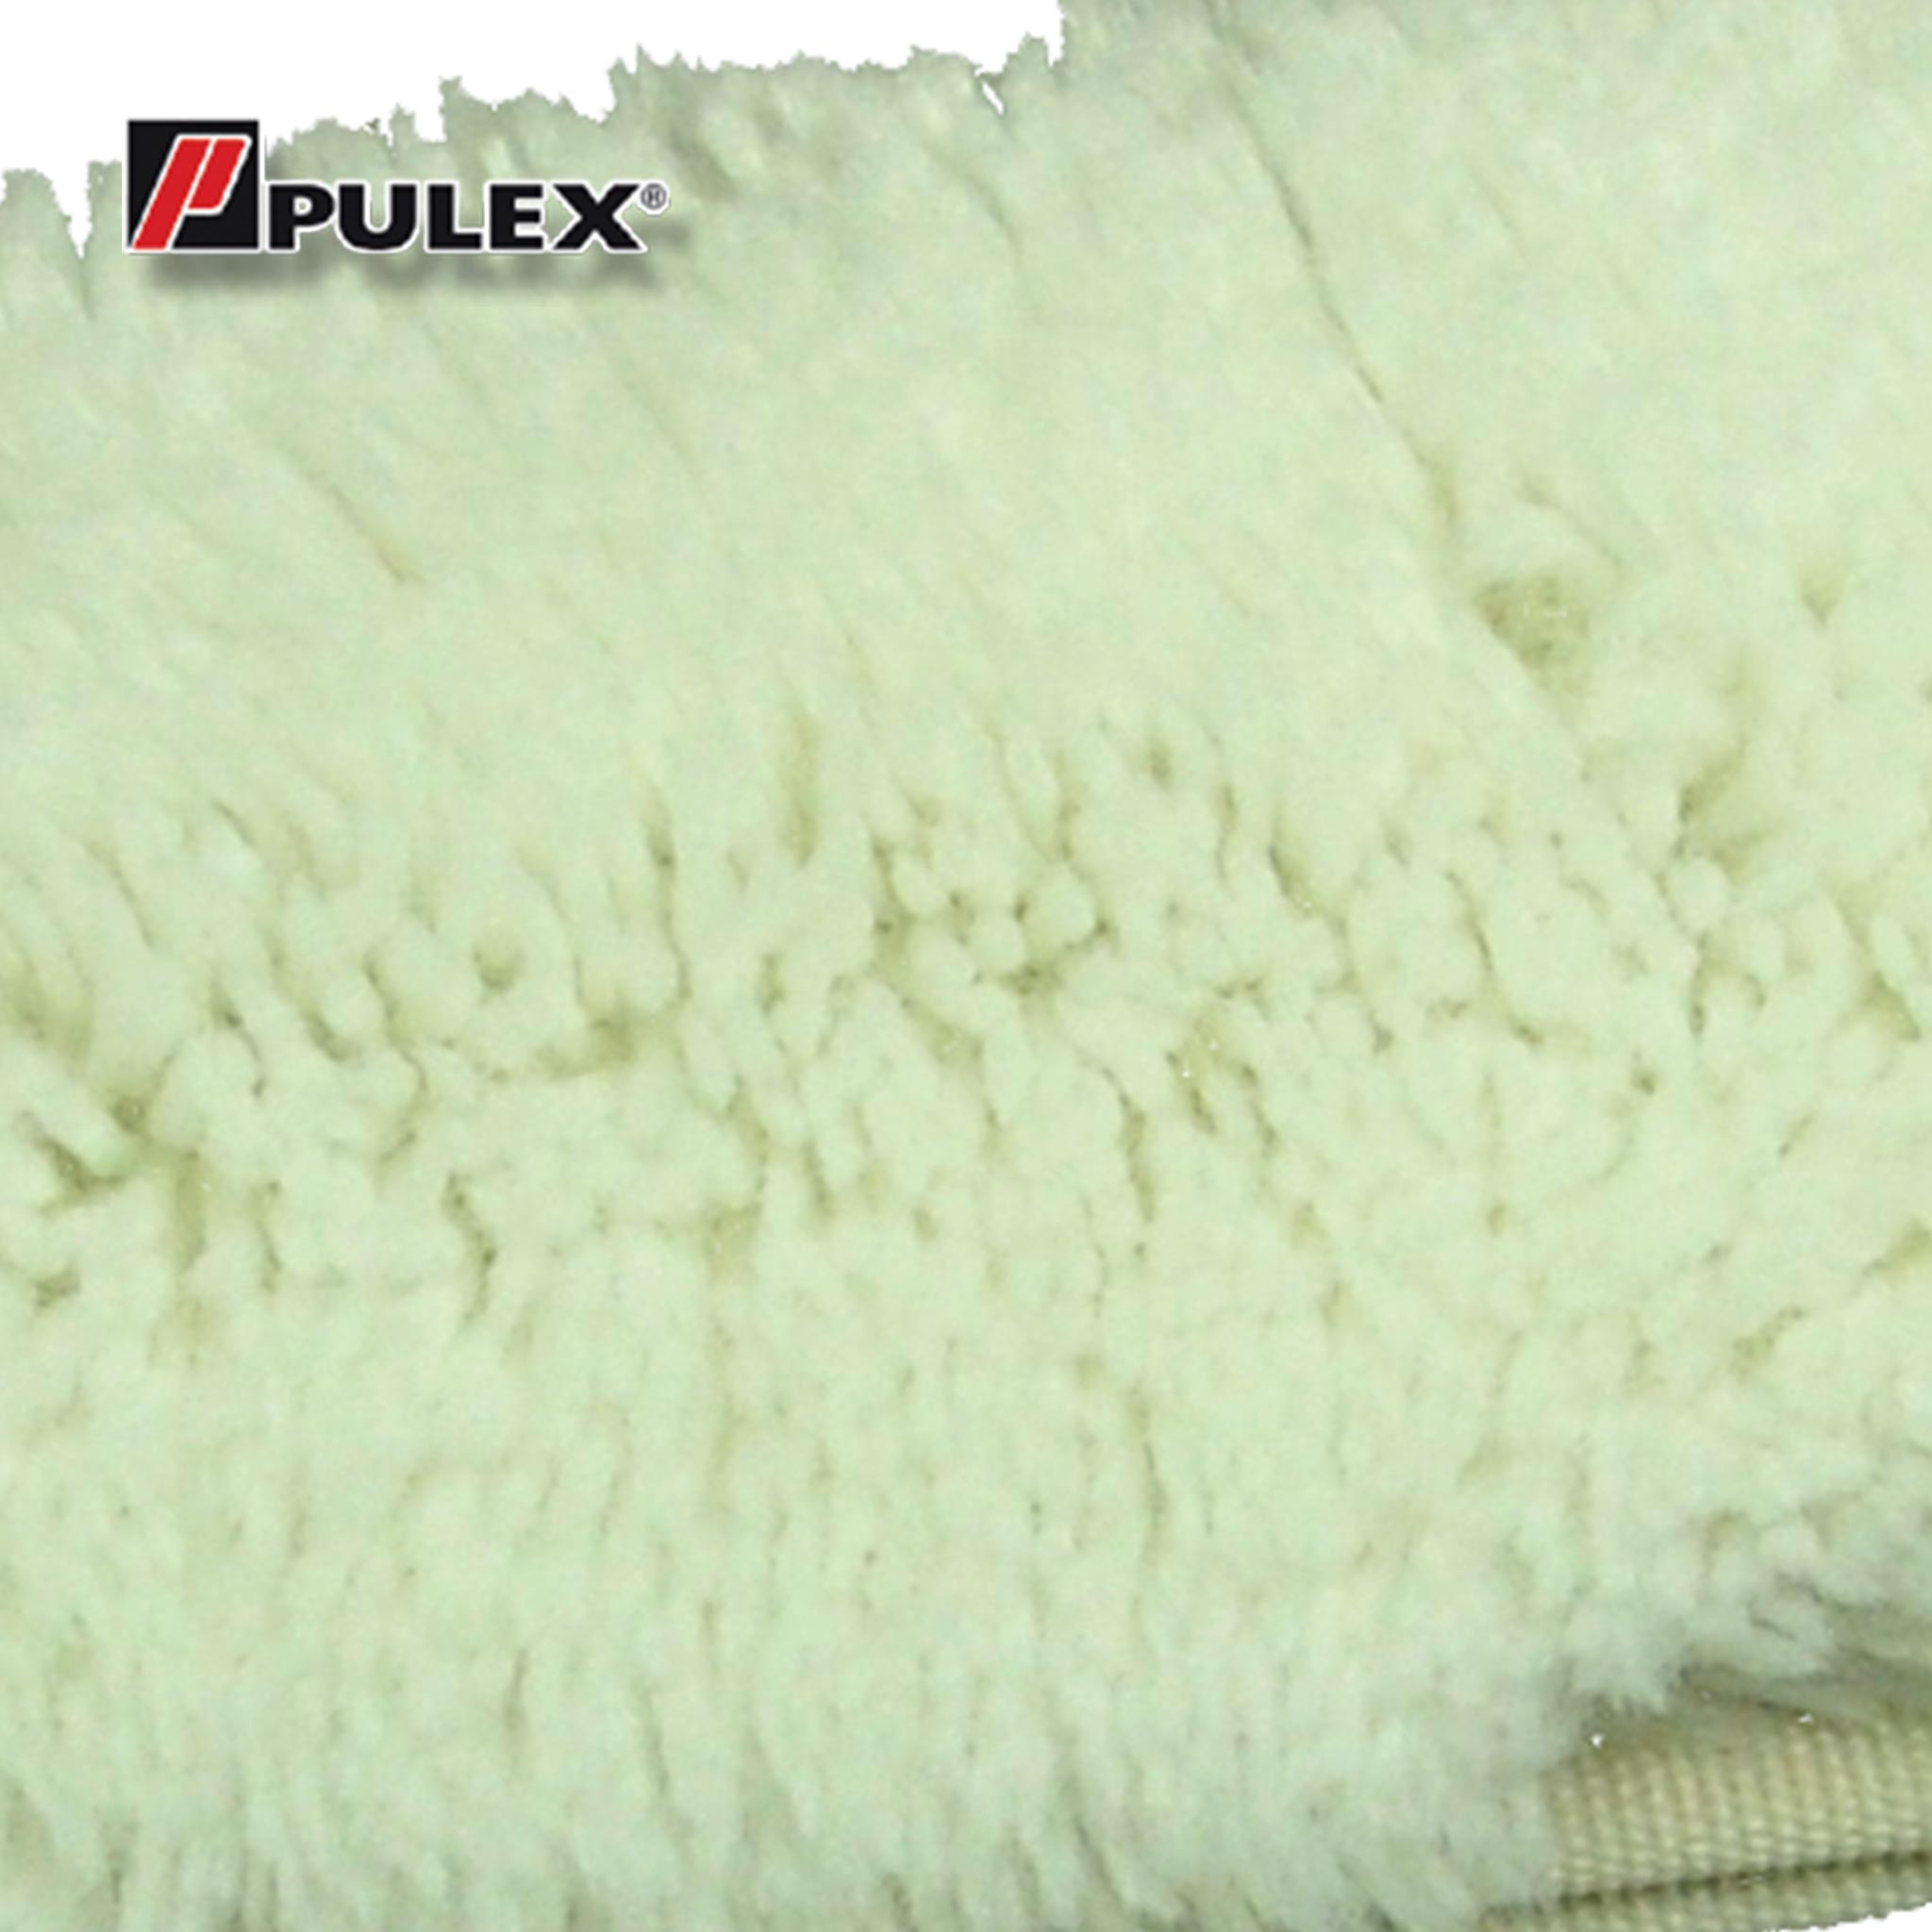 Pulex Standard Washer Sleeve